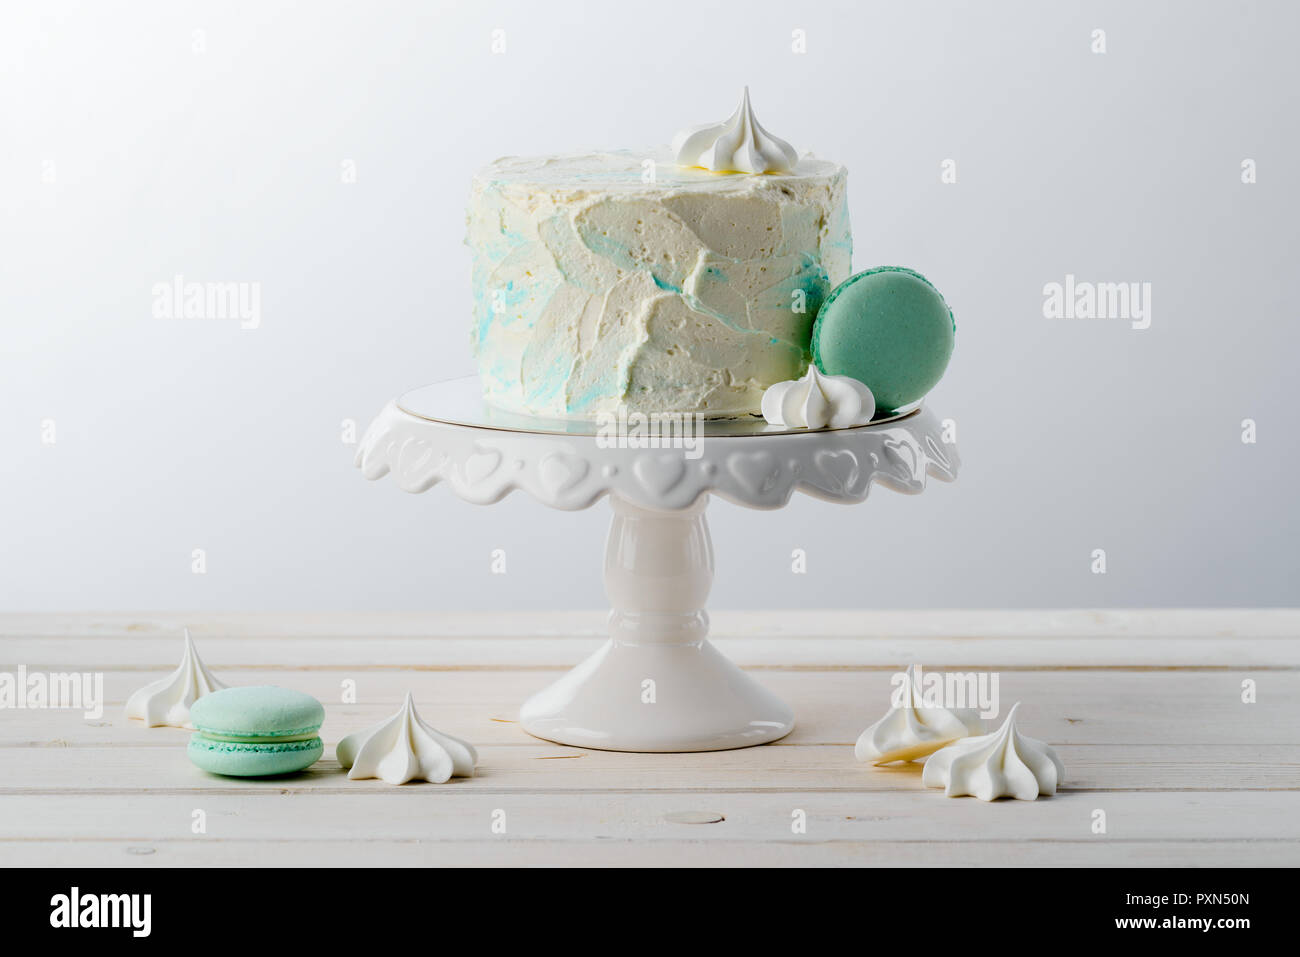 Gâteau de macaroni et minimaliste, meringues Banque D'Images